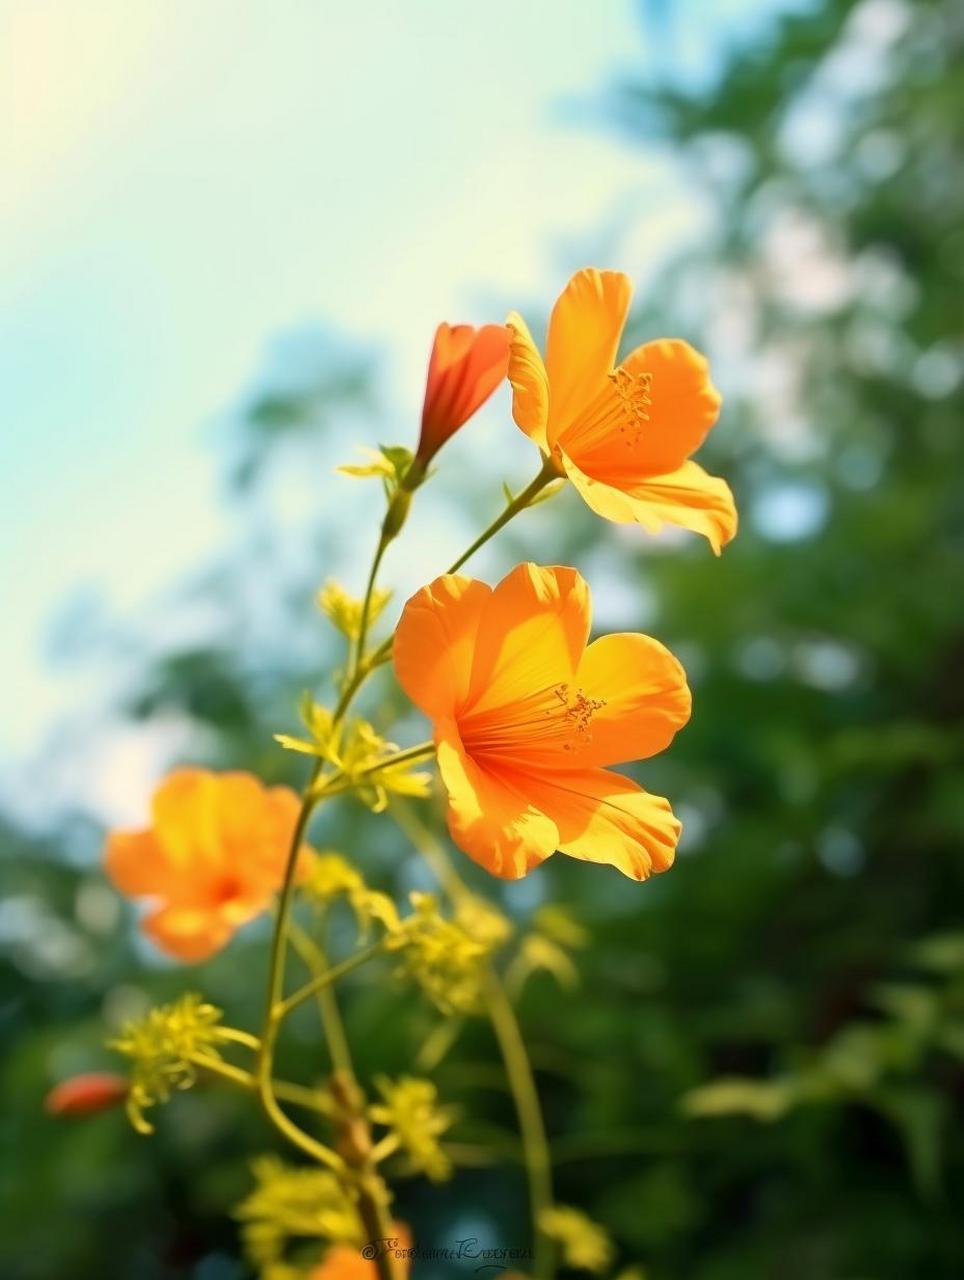 美花分享:夏日里清新亮眼的橙色小花 这橘黄色的花开的是真漂亮,花的